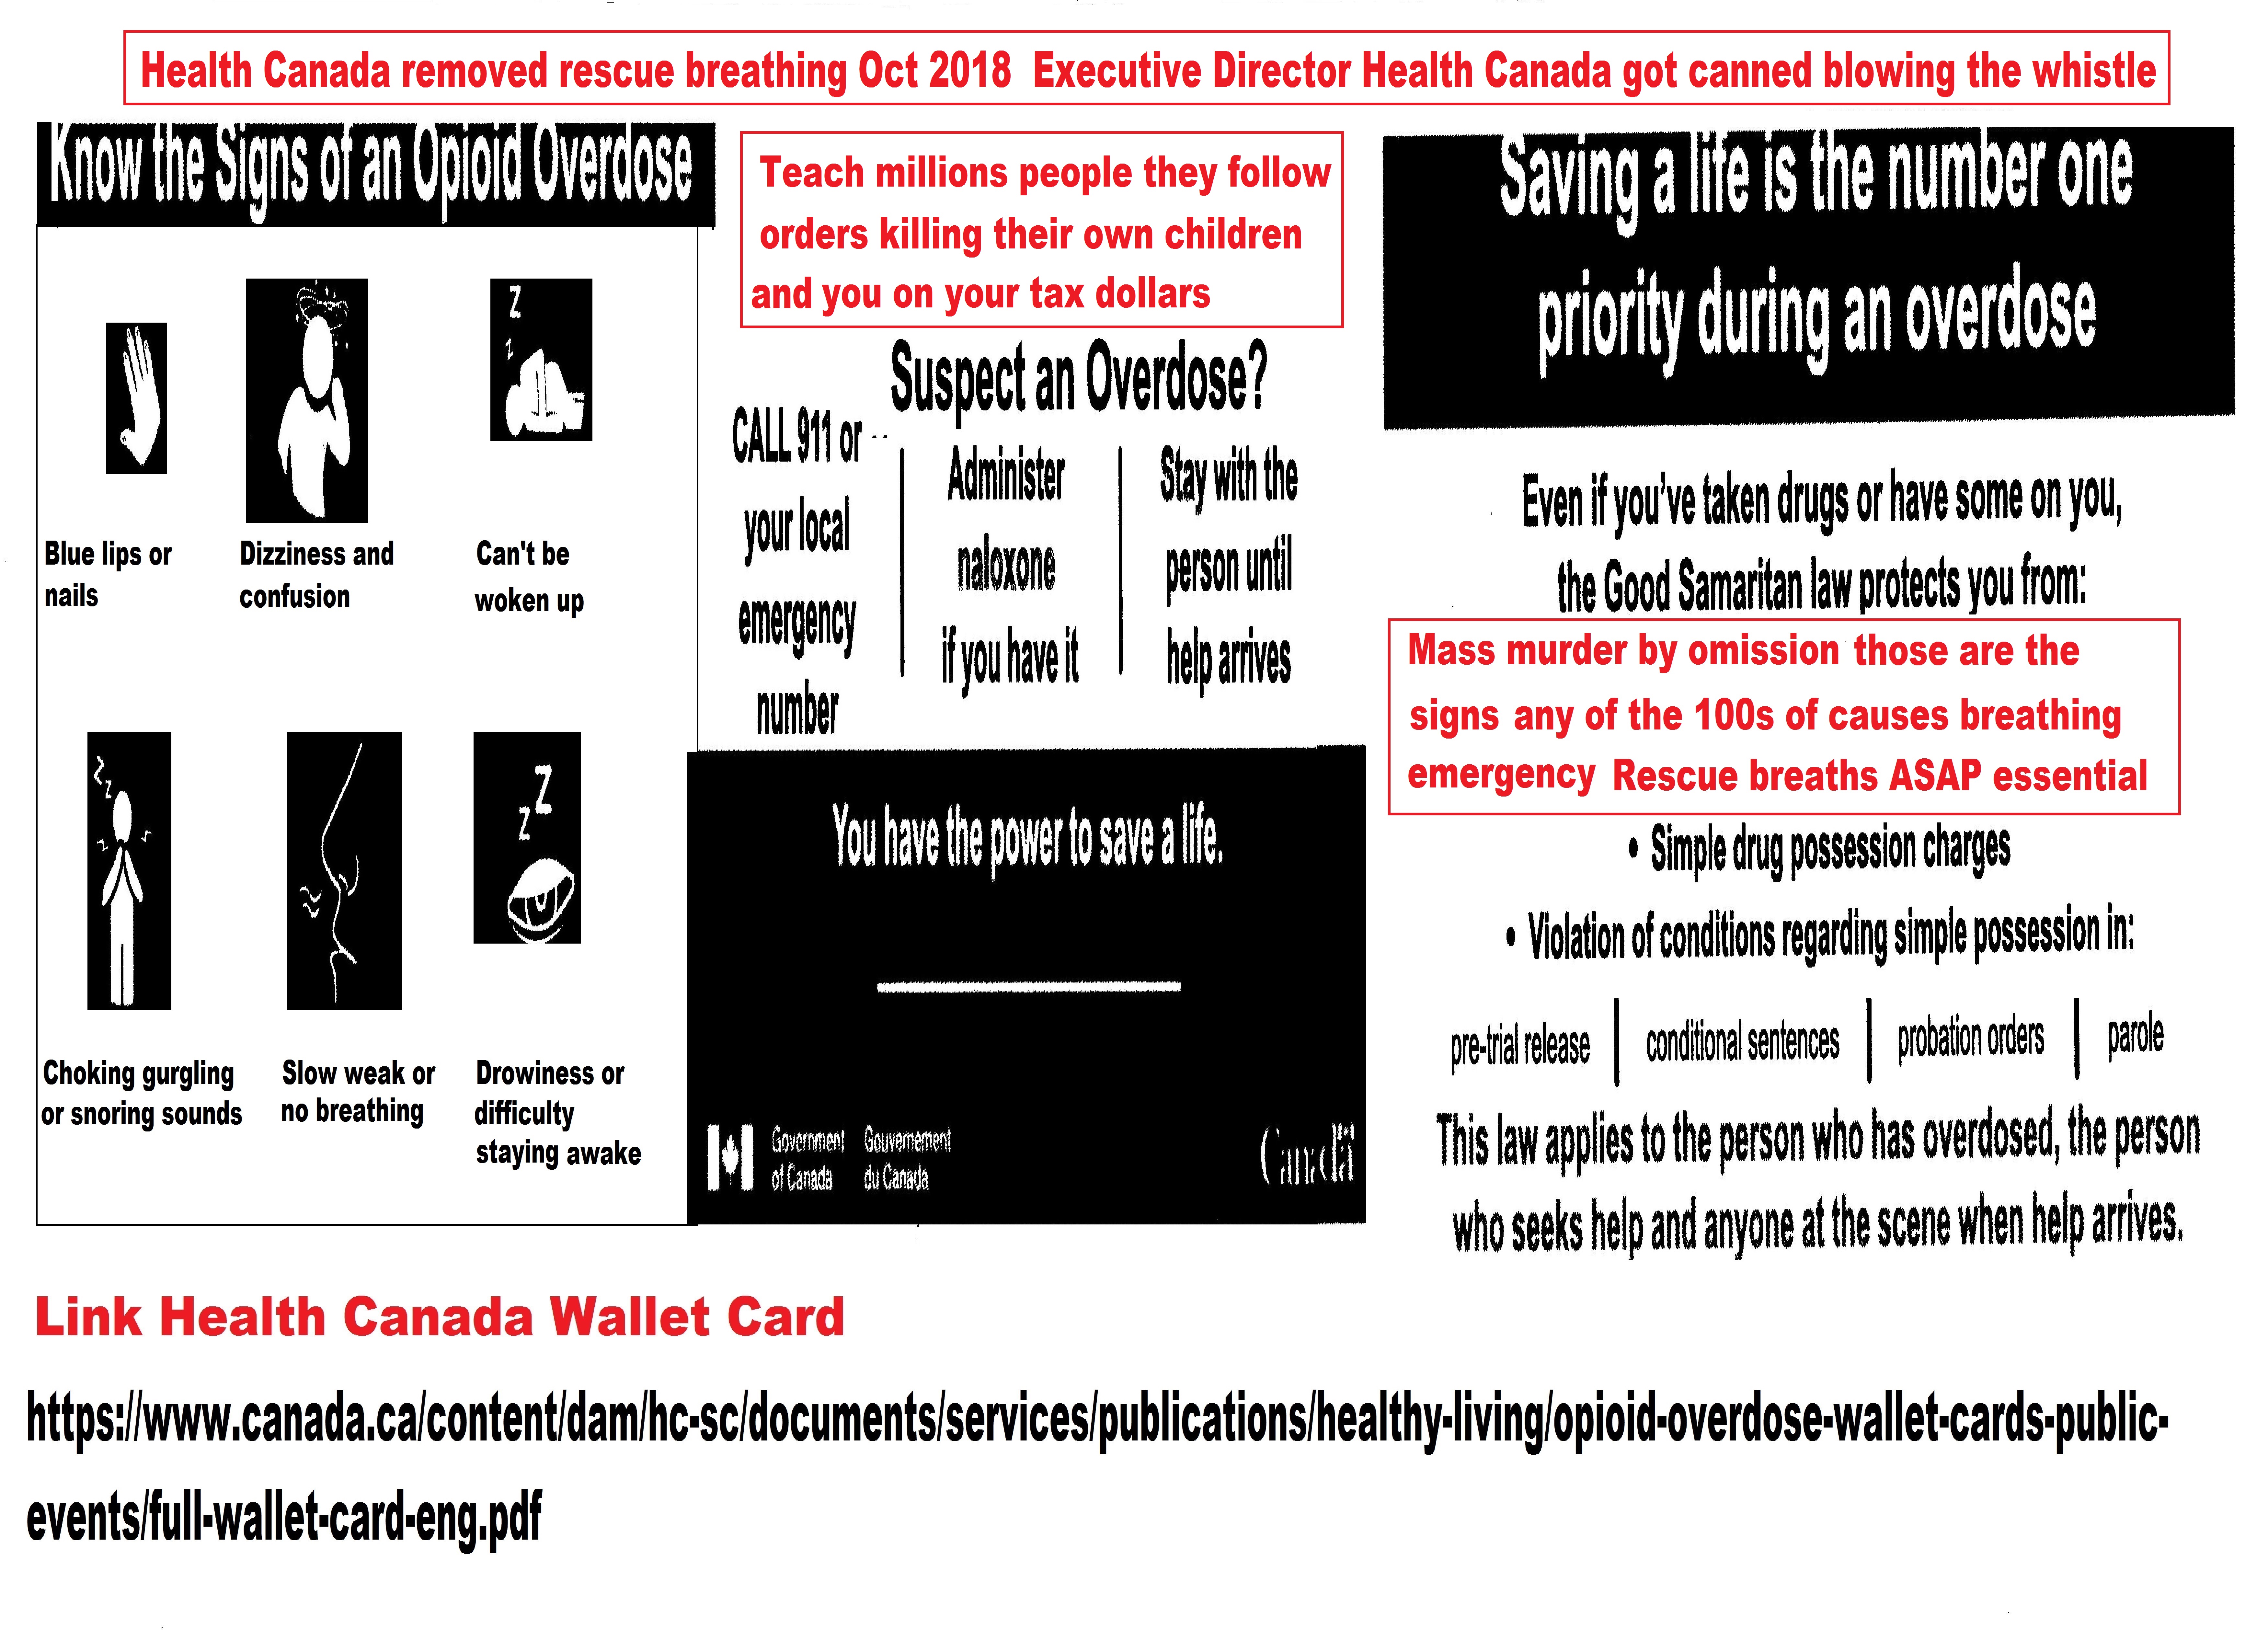 Health Canada wallet card